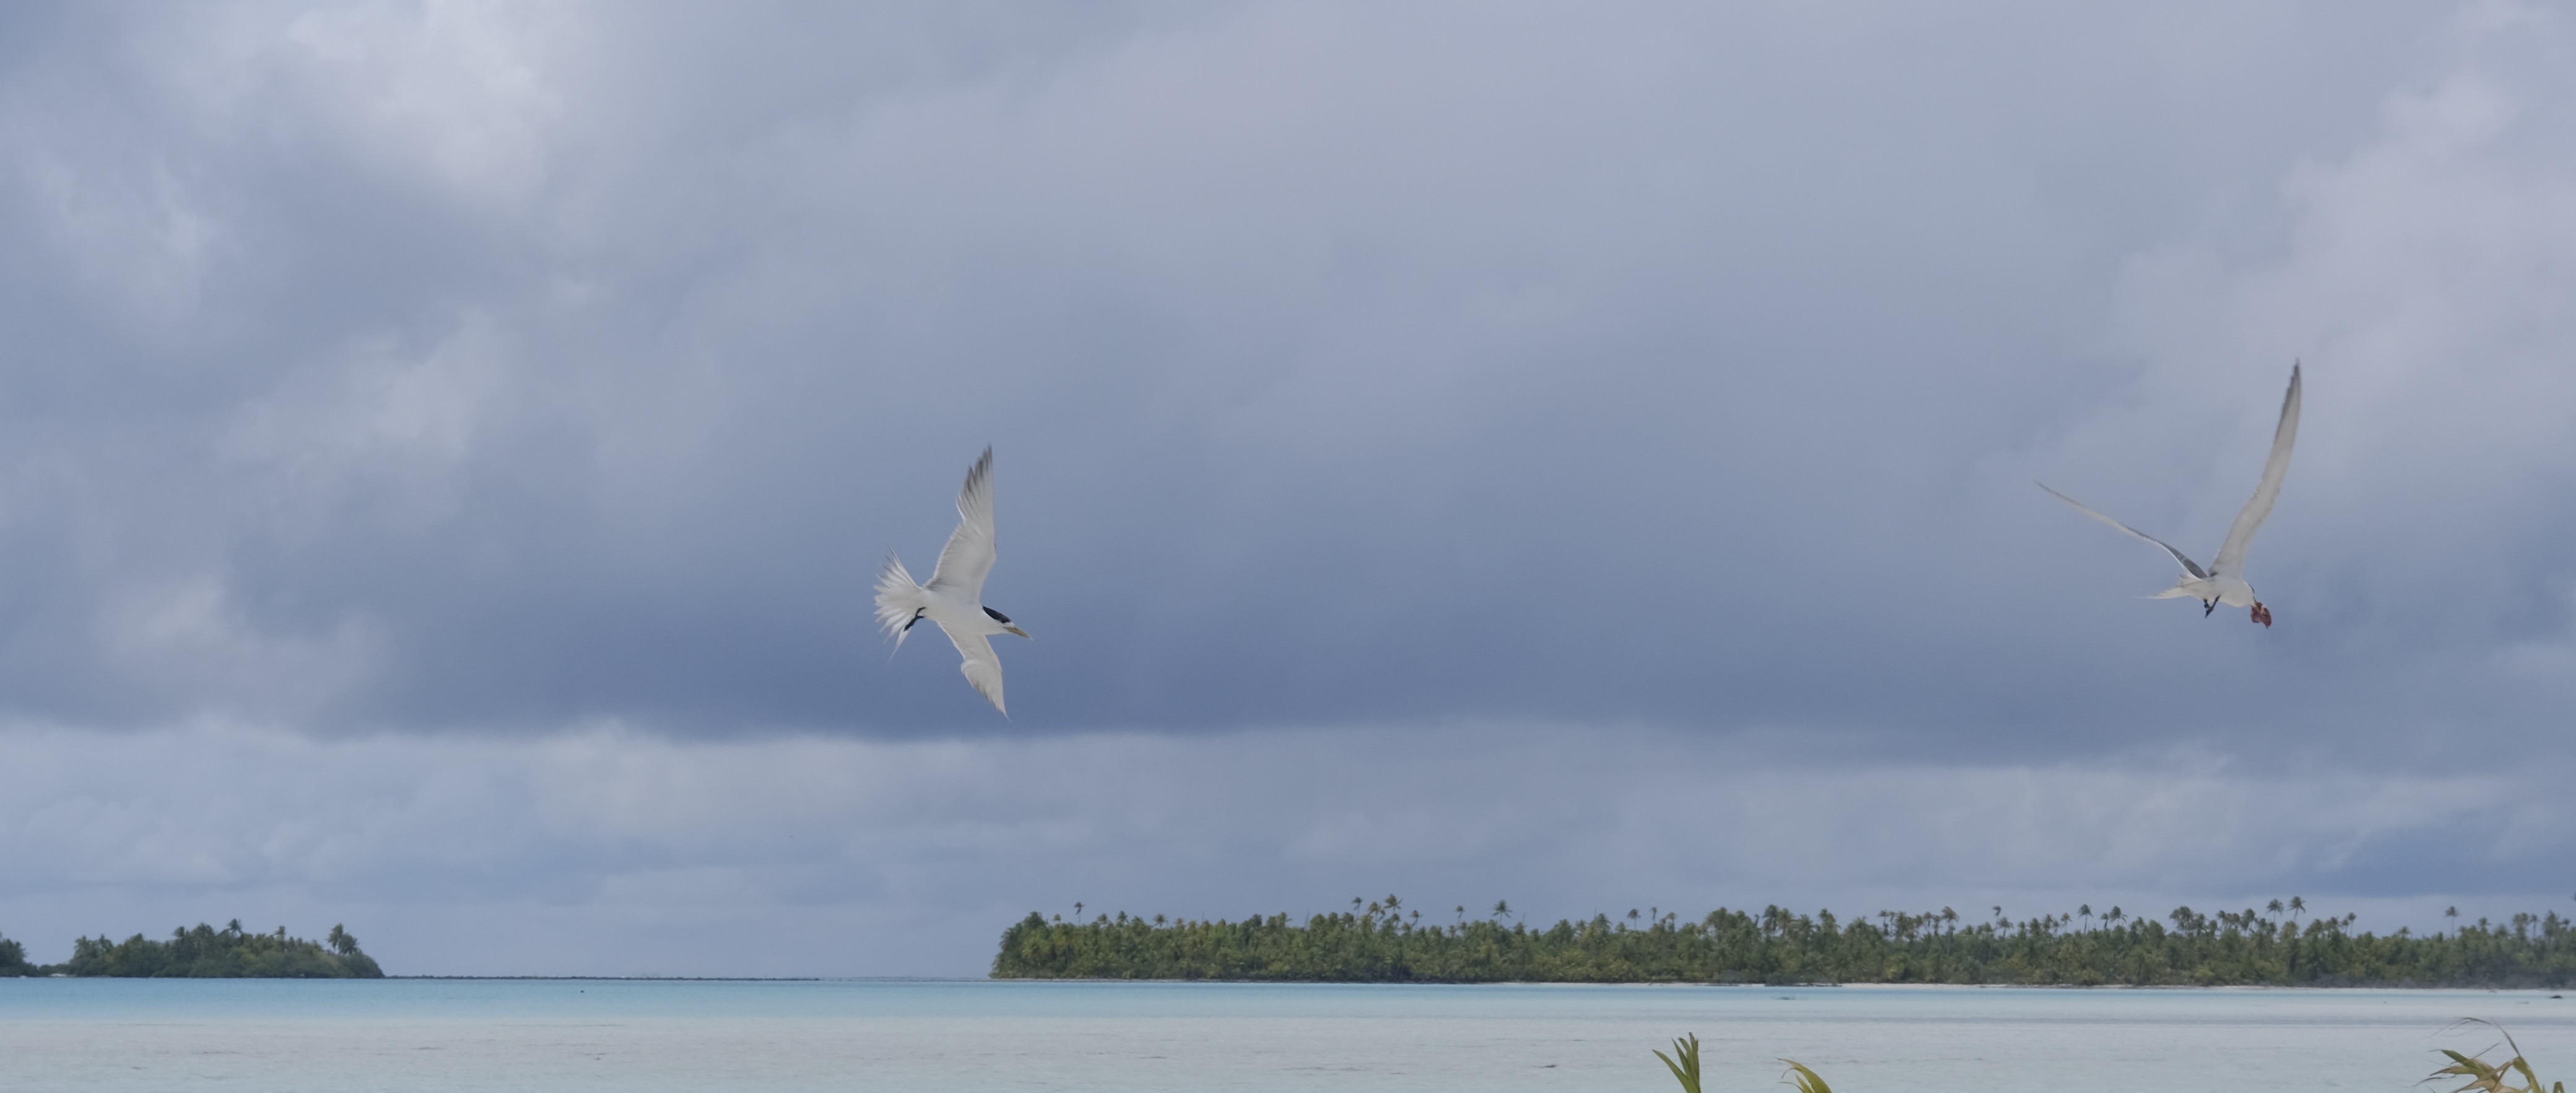 Deux sternes huppées en plein vol, un des oiseaux des Tuamotu